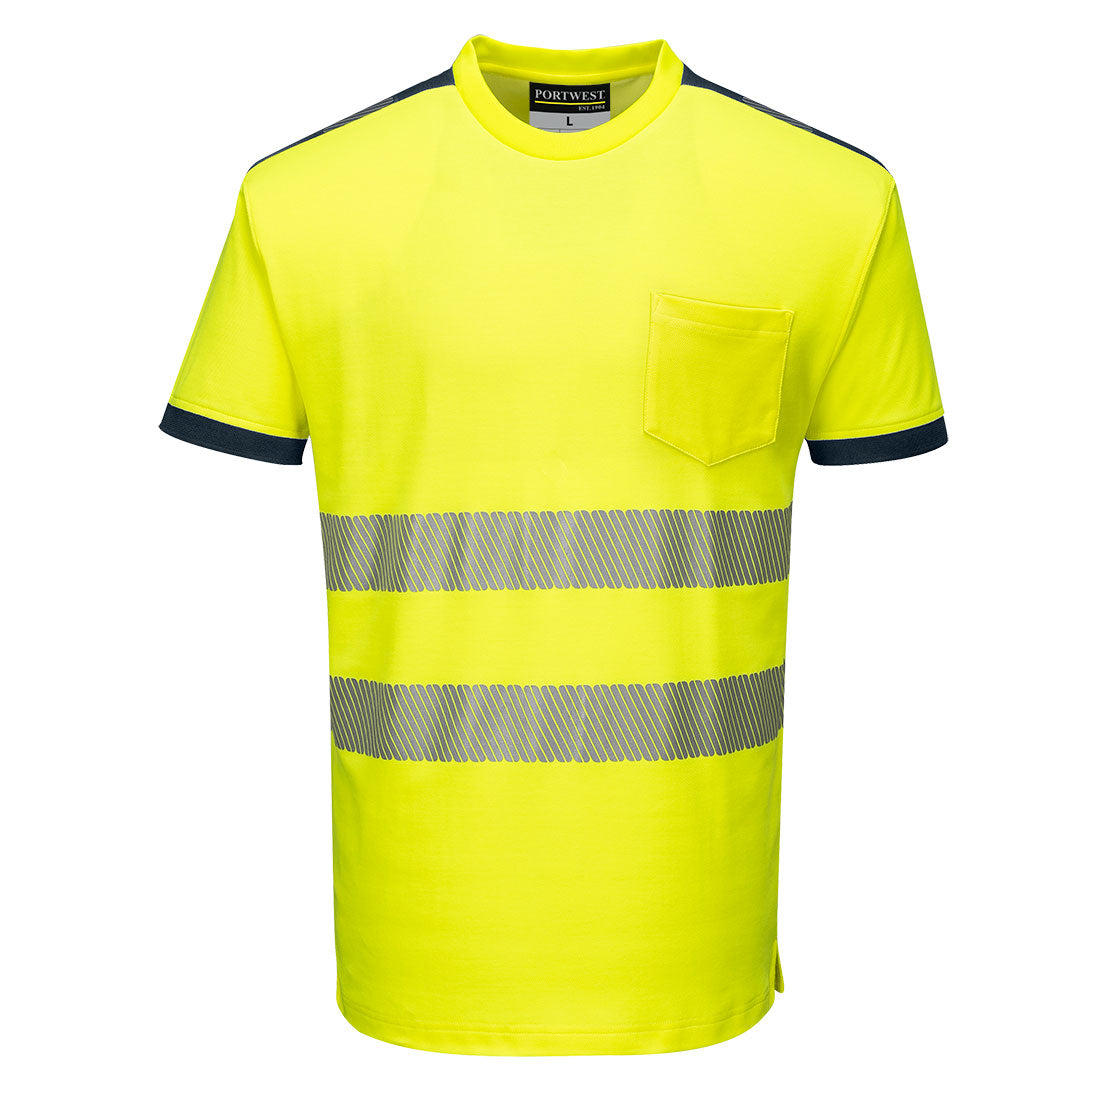 Portwest T181 - Yellow/Navy Sz XXL PW3 Hi-Vis Short Sleeved T-Shirt Viz Visibilty